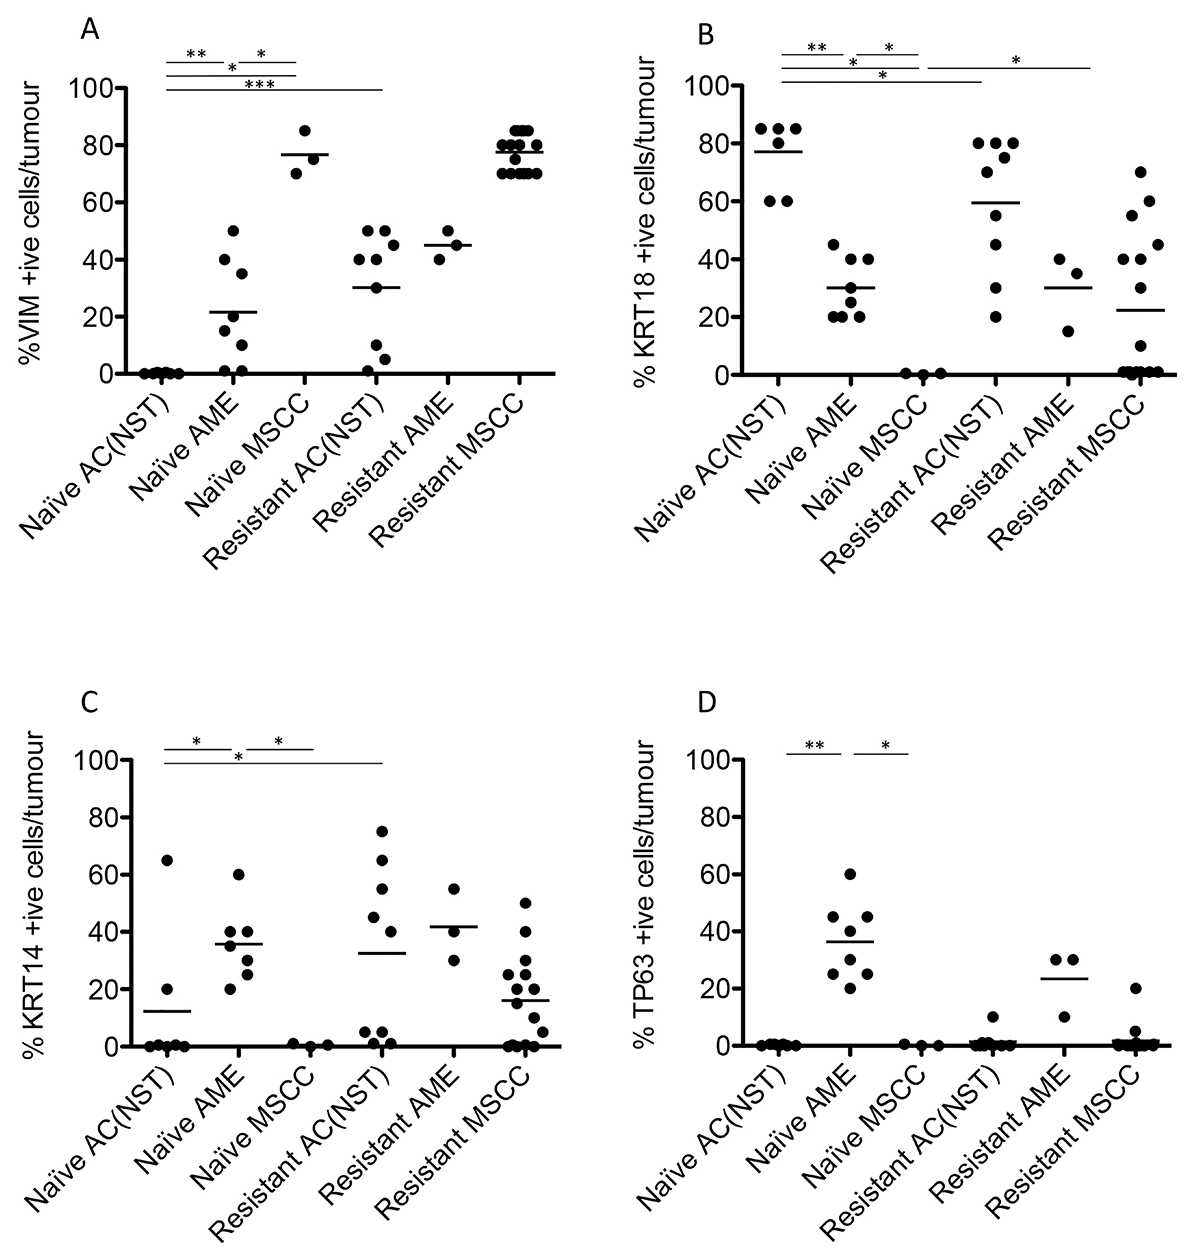 Quantitation of immunohistochemical staining in olaparib-naïve and olaparib-resistant Brca2/p53-mutant tumours.